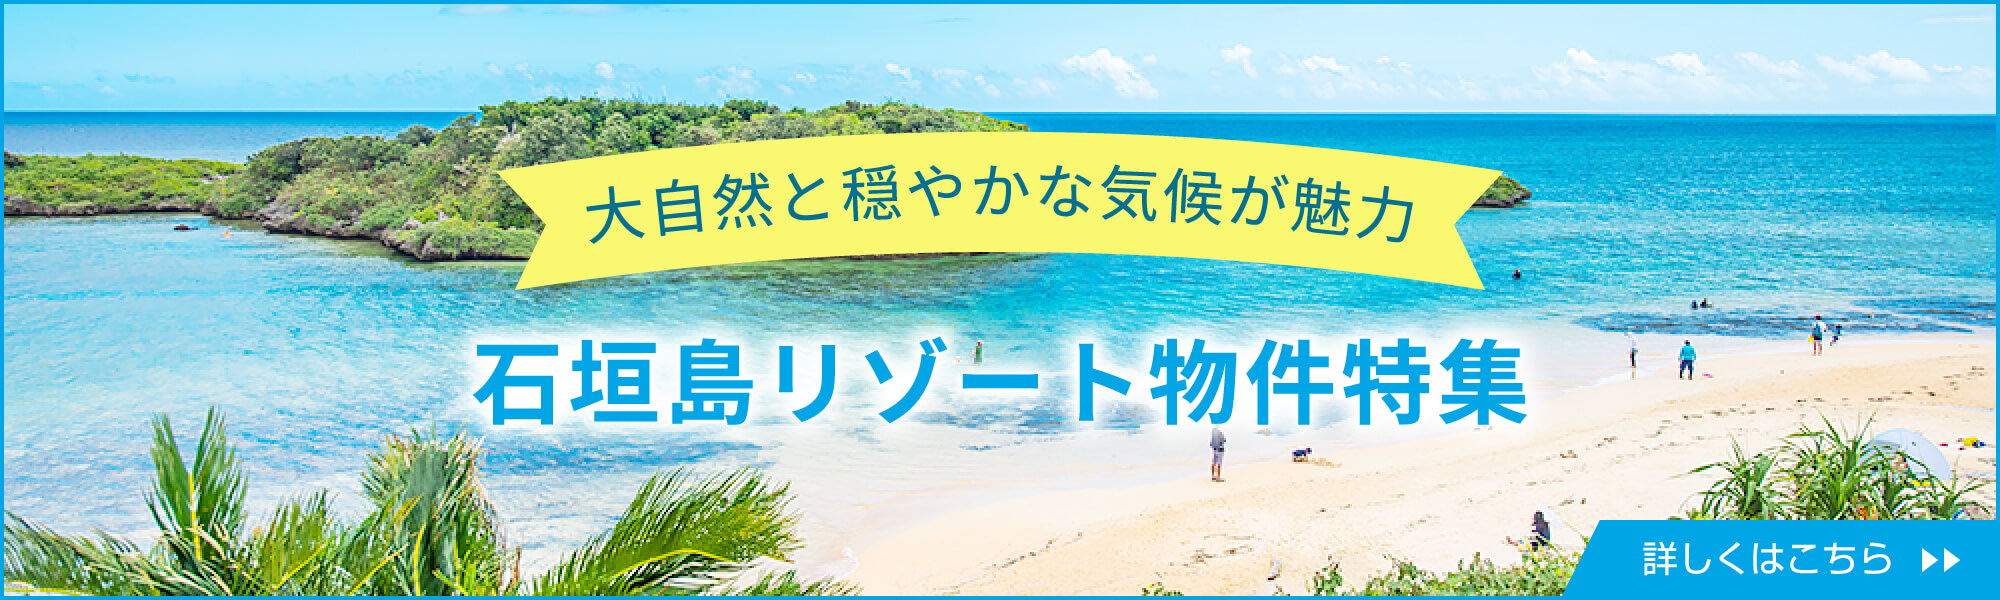 大自然と穏やかな気候が魅力石垣島リゾート物件特集詳しくはこちら